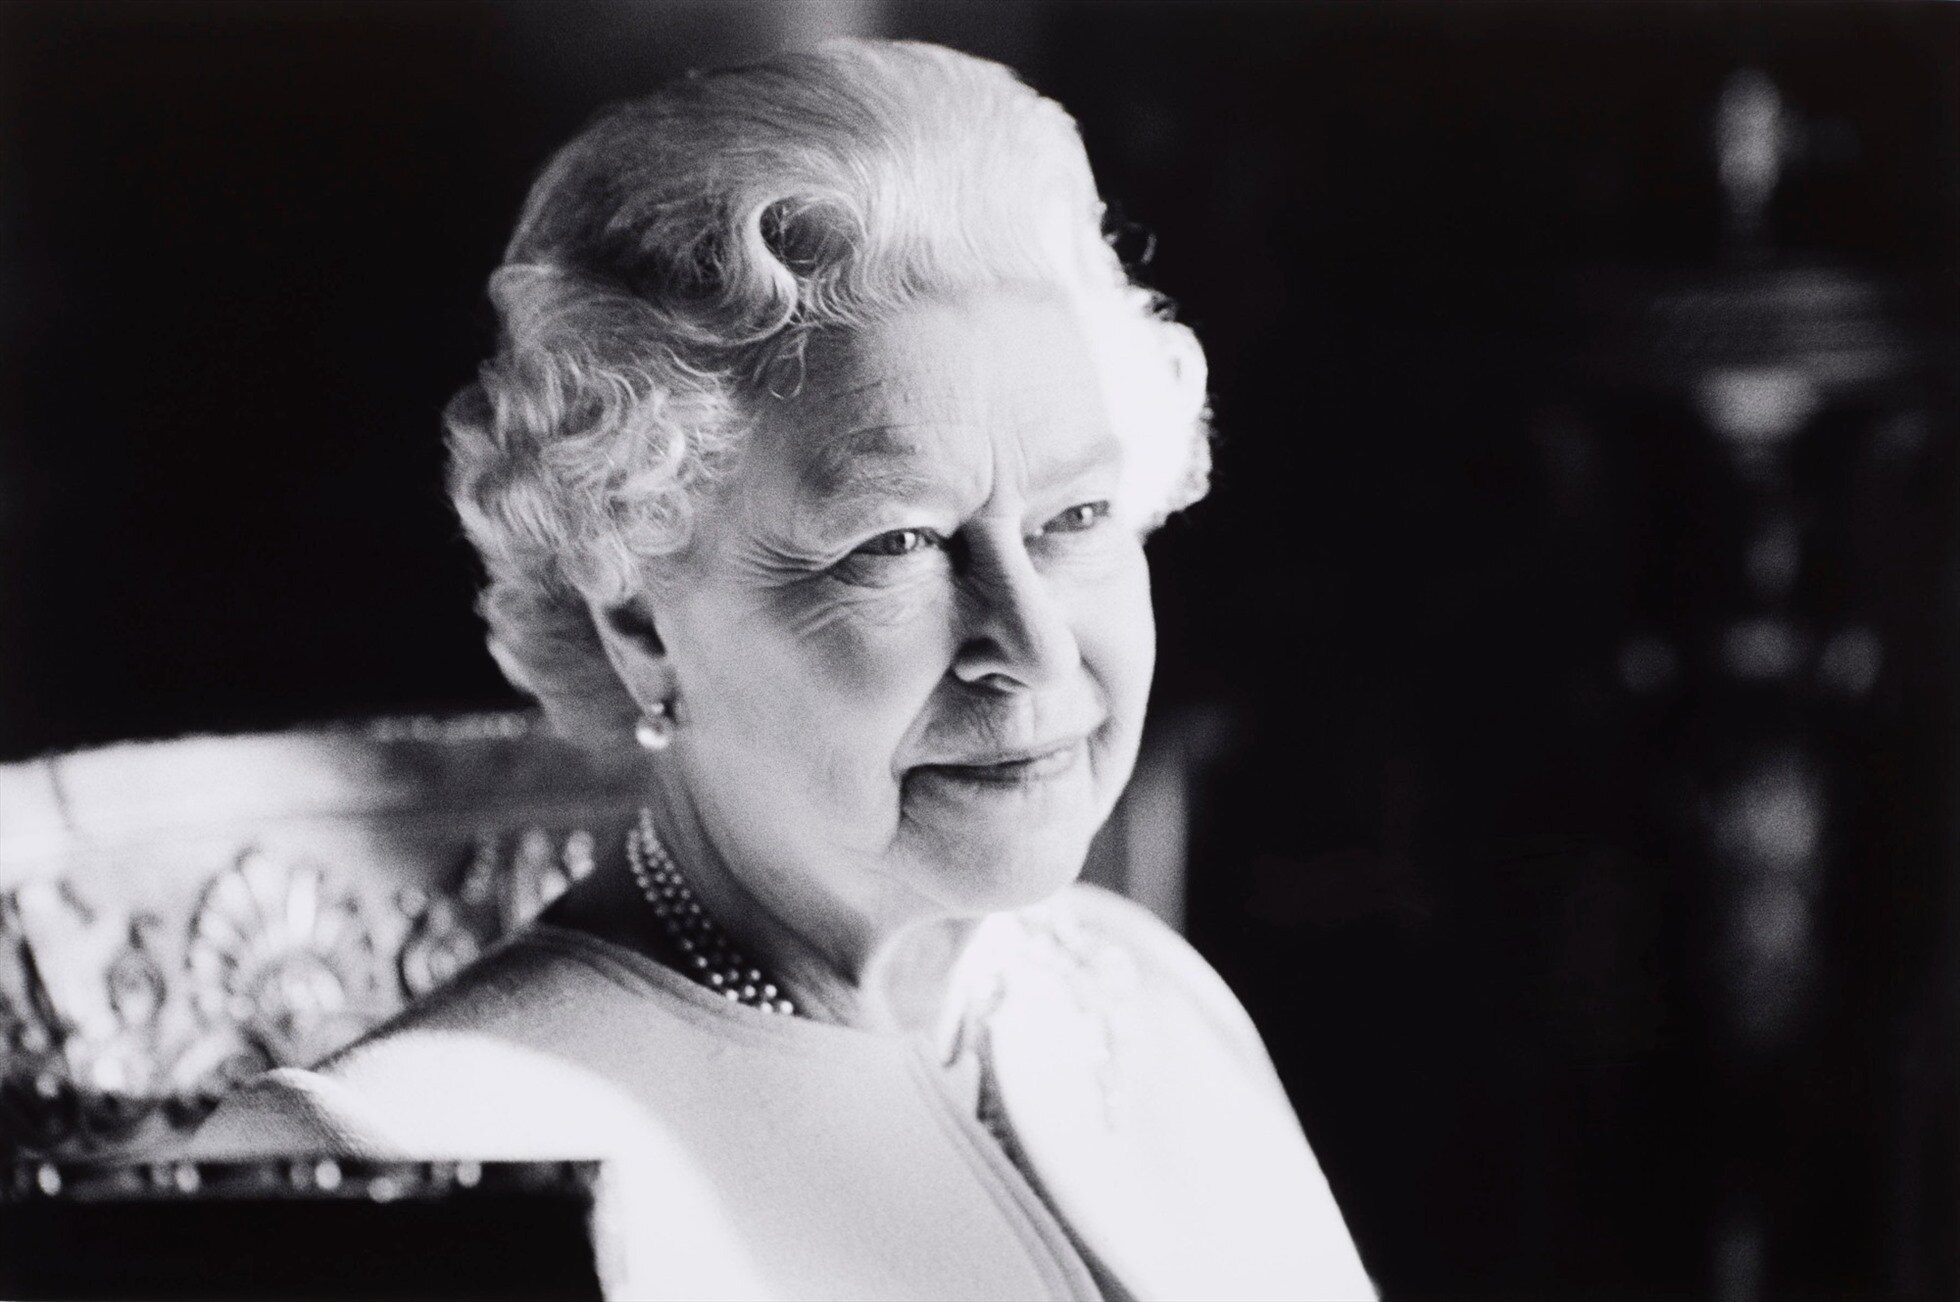 NỮ HOÀNG ANH QUA ĐỜI - ẢNH HƯỞNG MẠNH MẼ ĐẾN NỀN KINH TẾ. Hôm qua, Nữ hoàng Elizabeth II đã qua đời,  ...